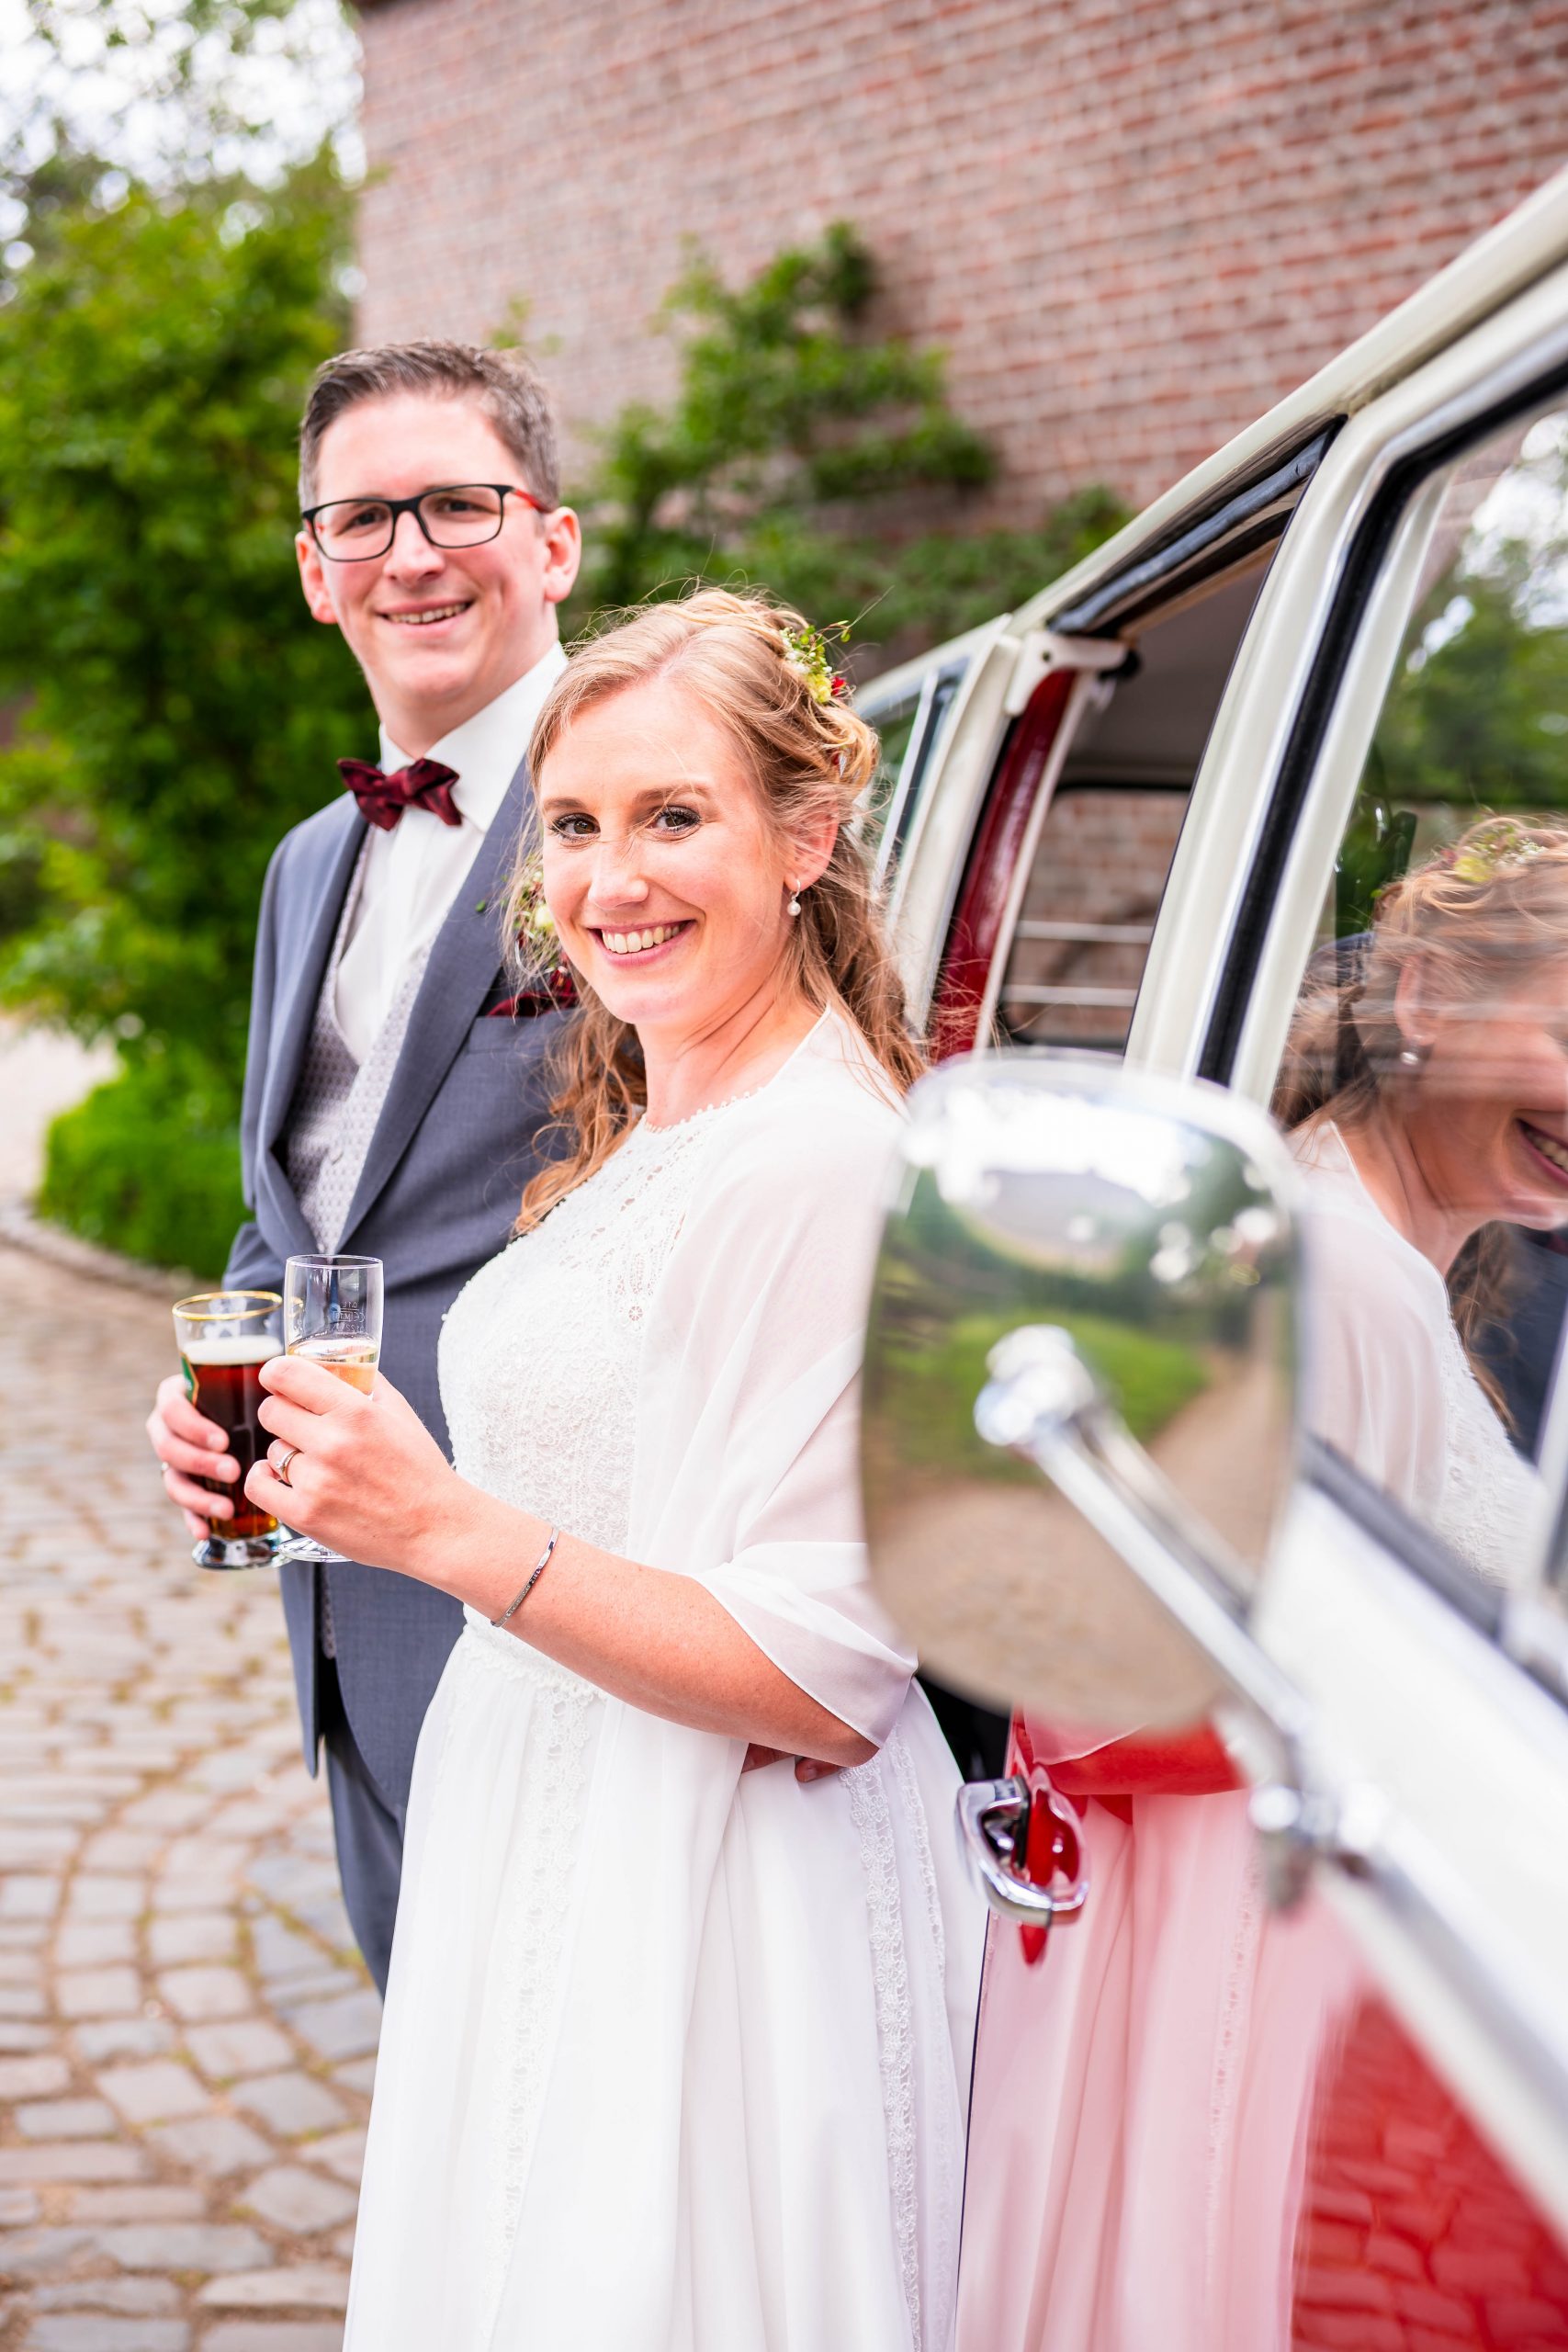 Ein fröhliches Brautpaar, dass neben einem weiß-roten alten VW Bulli T2 Bus mit geöffneter Türe steht.